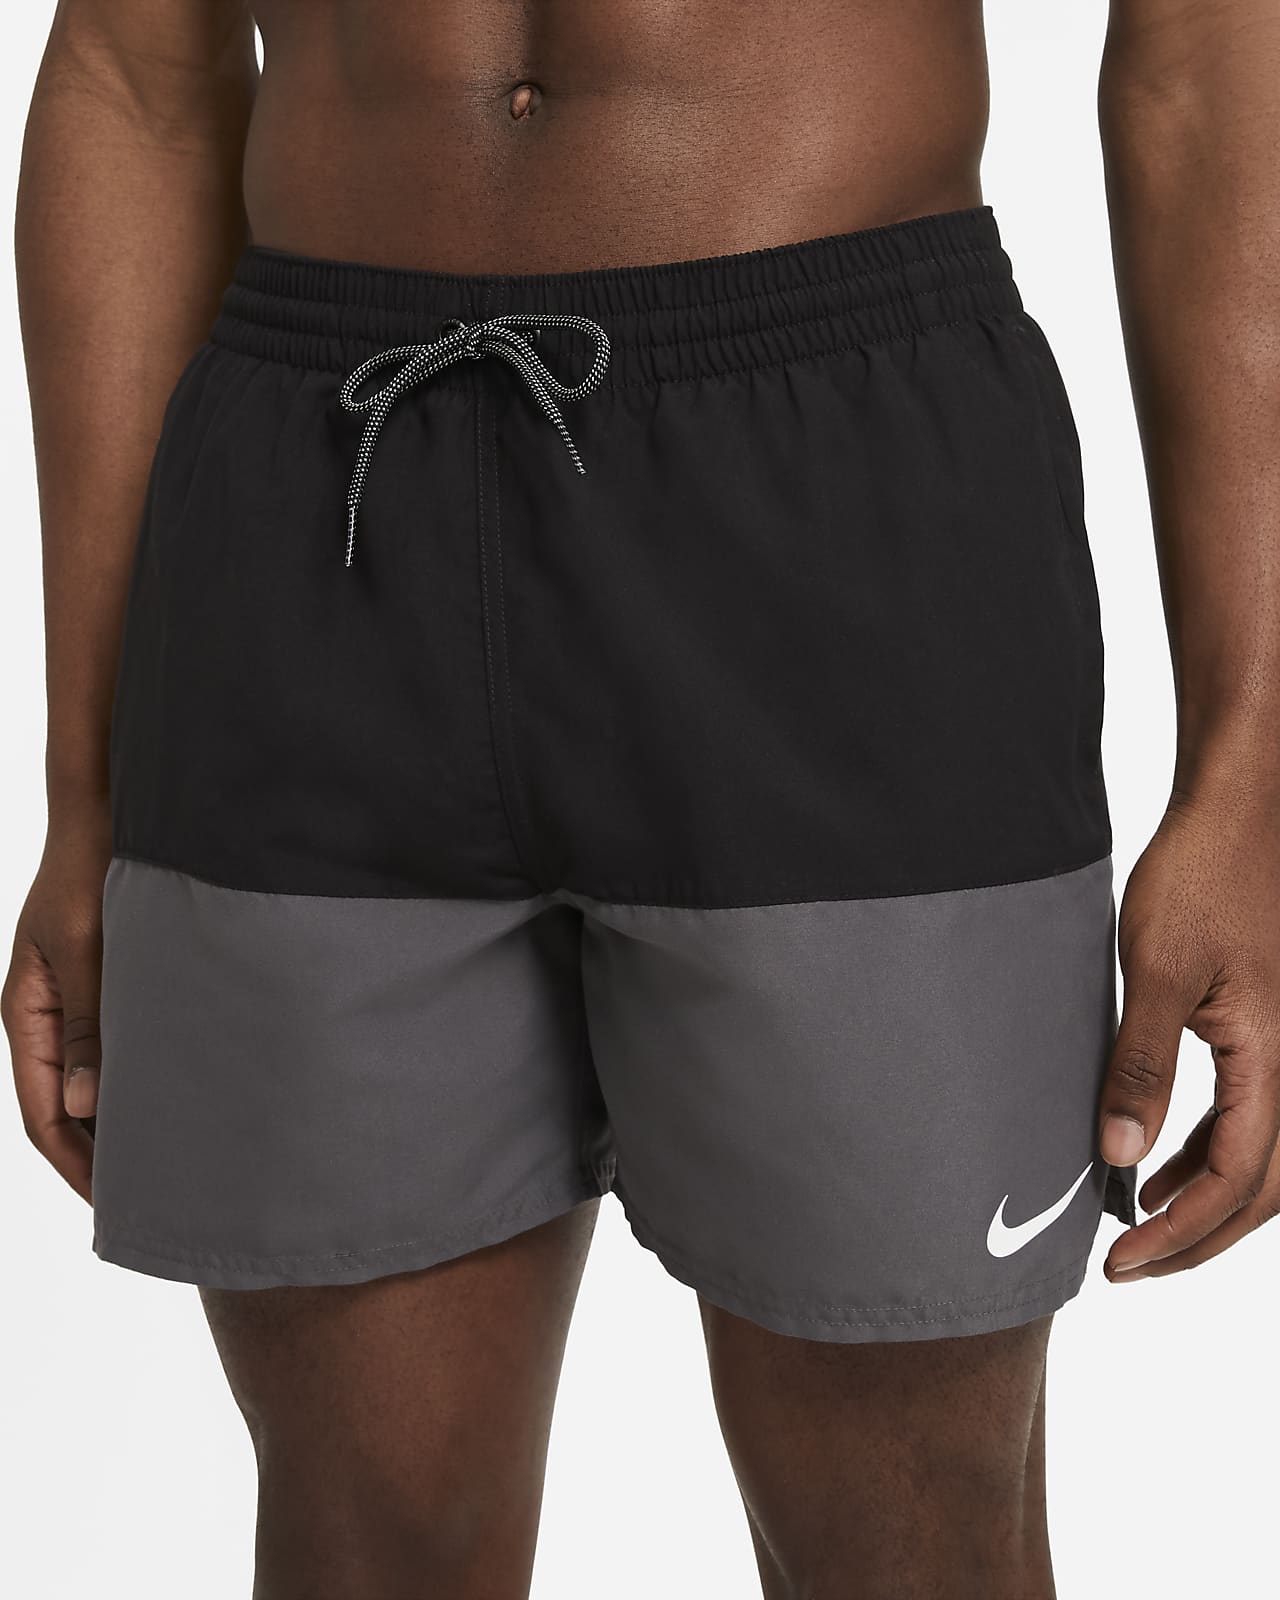 Nike Split Men's 13cm (approx.) Swimming Trunks. Nike PT